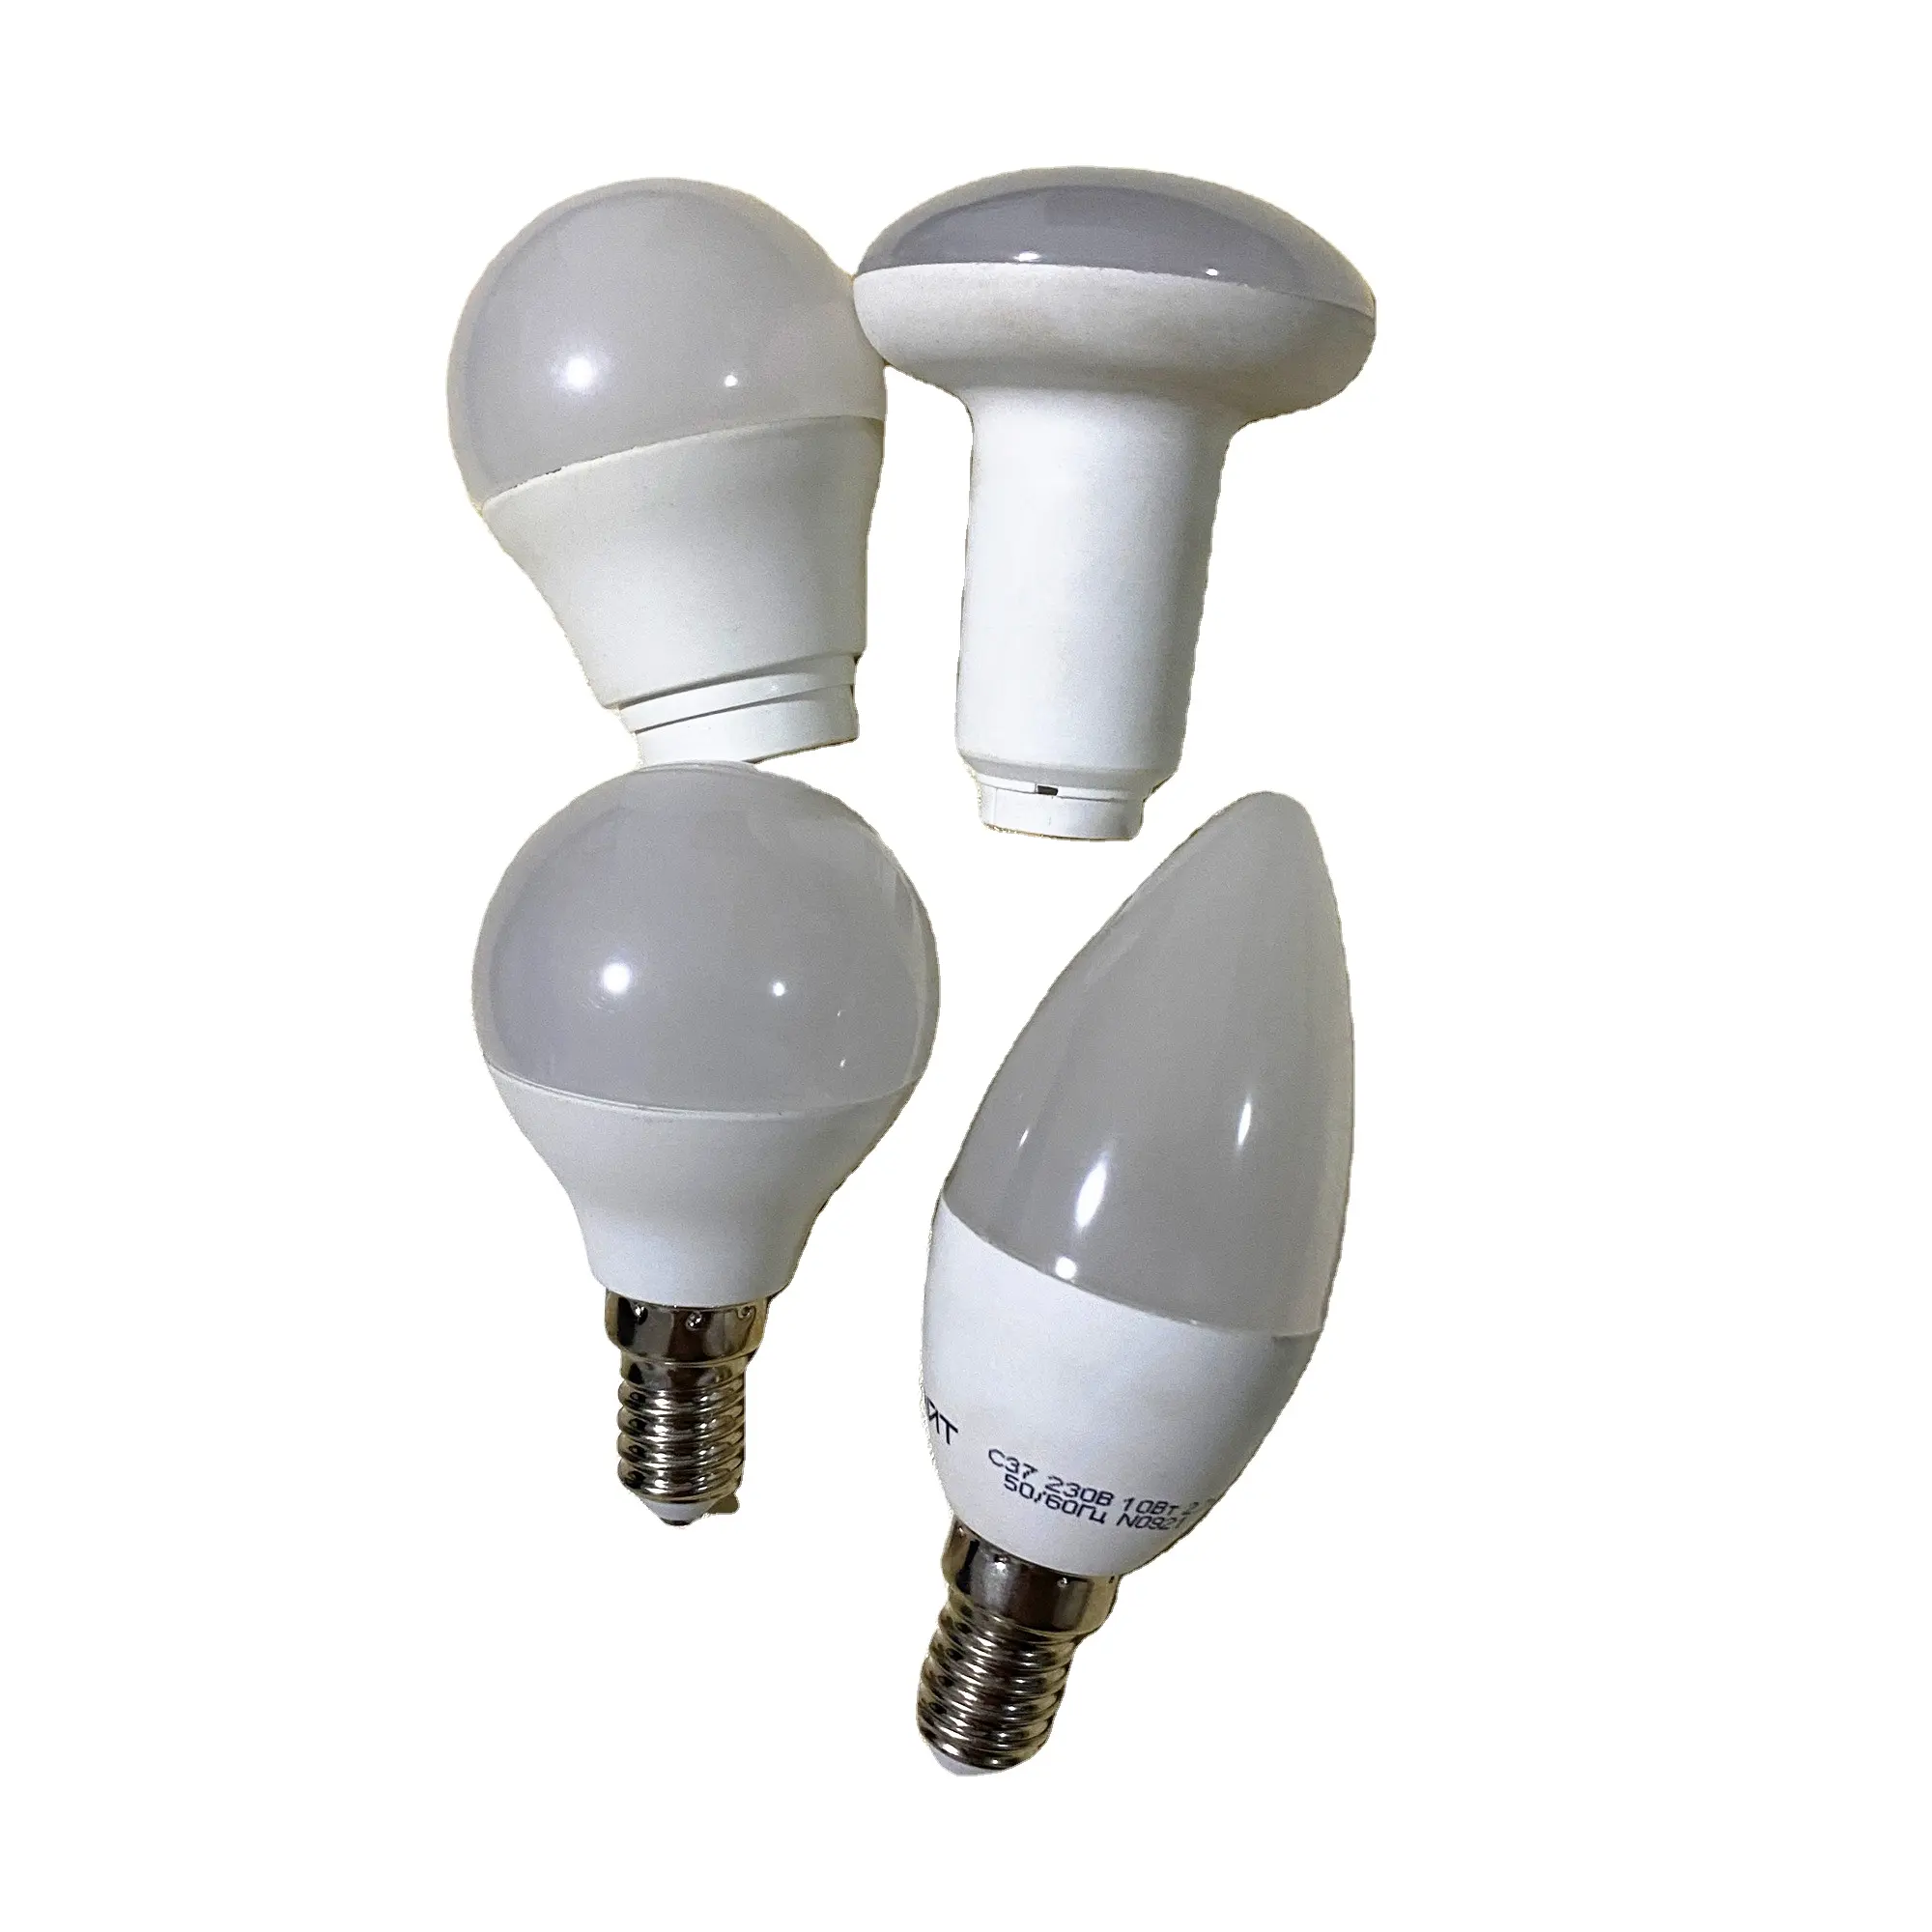 Yistar Custom di alta qualità parti di plastica servizio di iniezione di plastica LED lampadina caso di custodia lampadina con buon prezzo